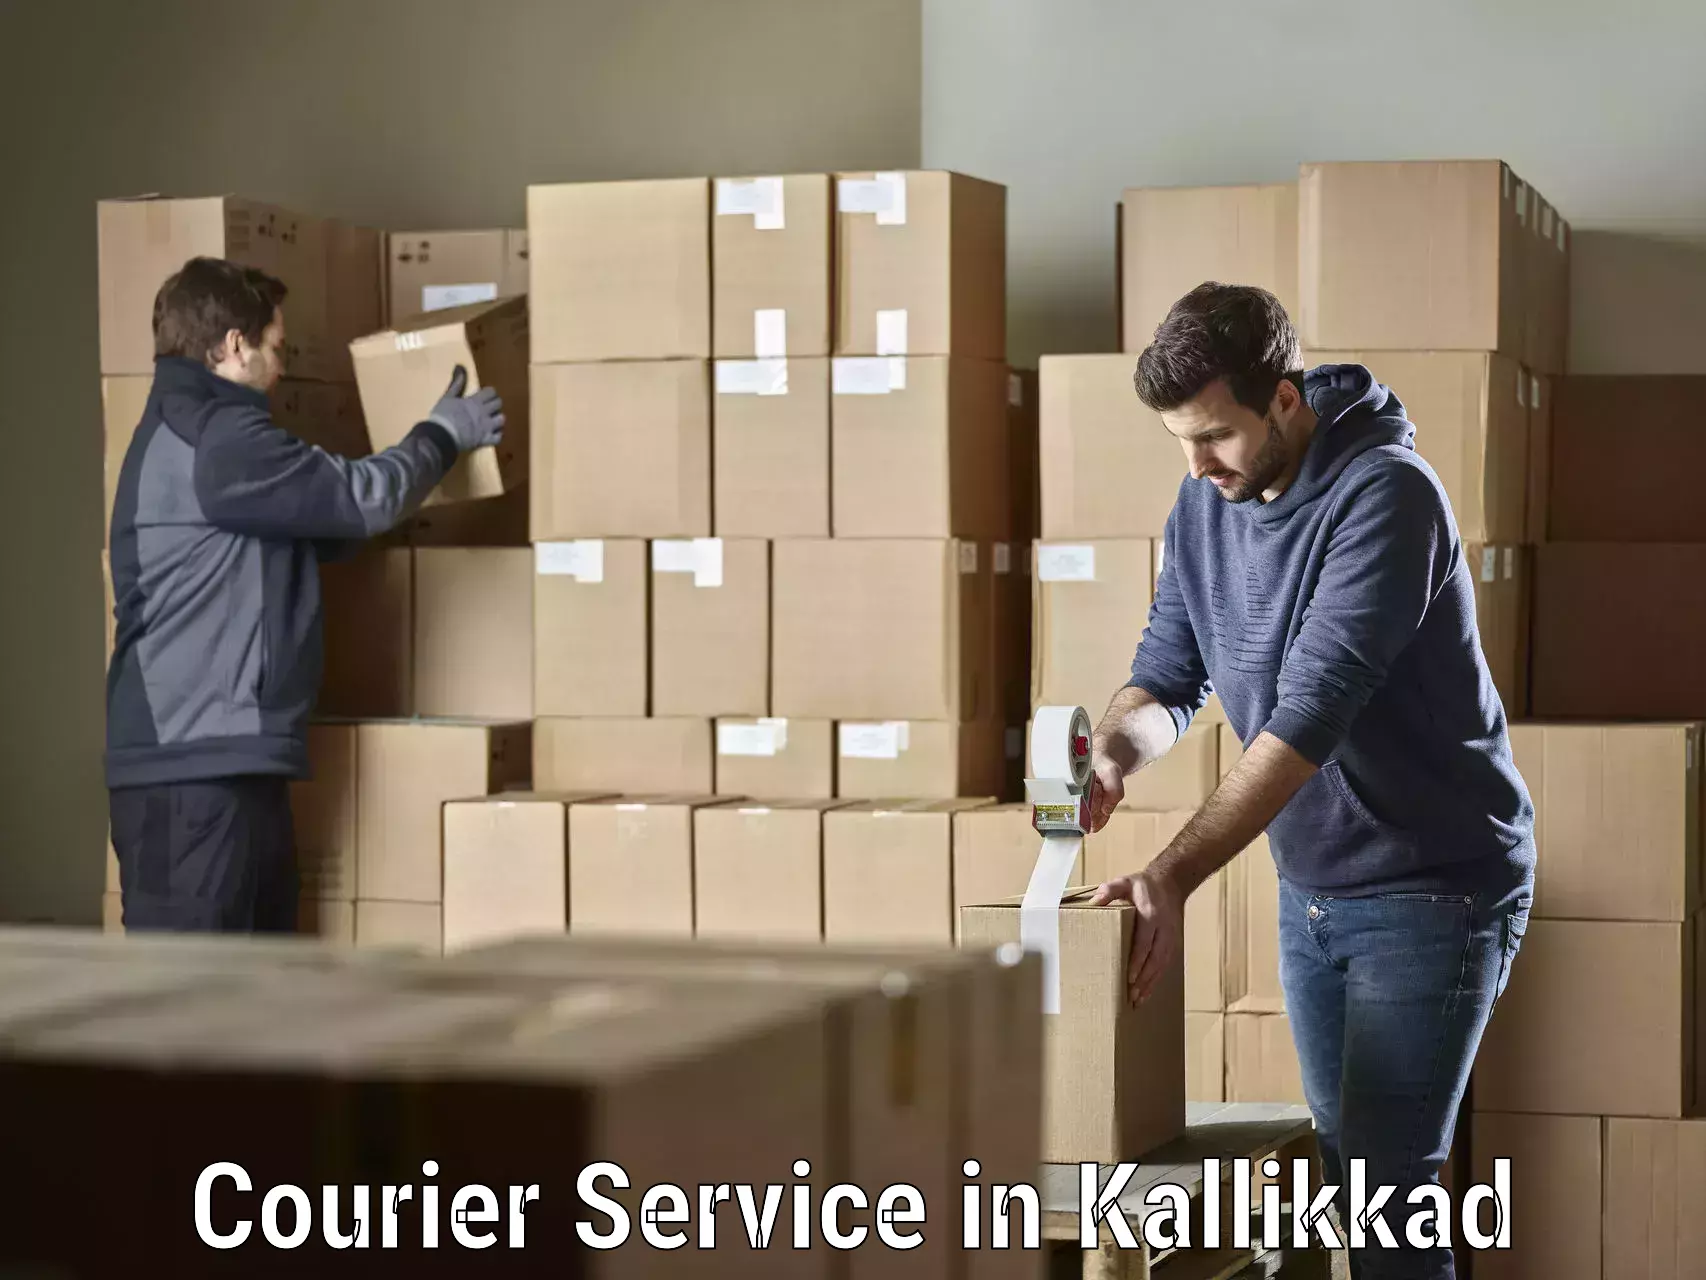 Overnight delivery in Kallikkad